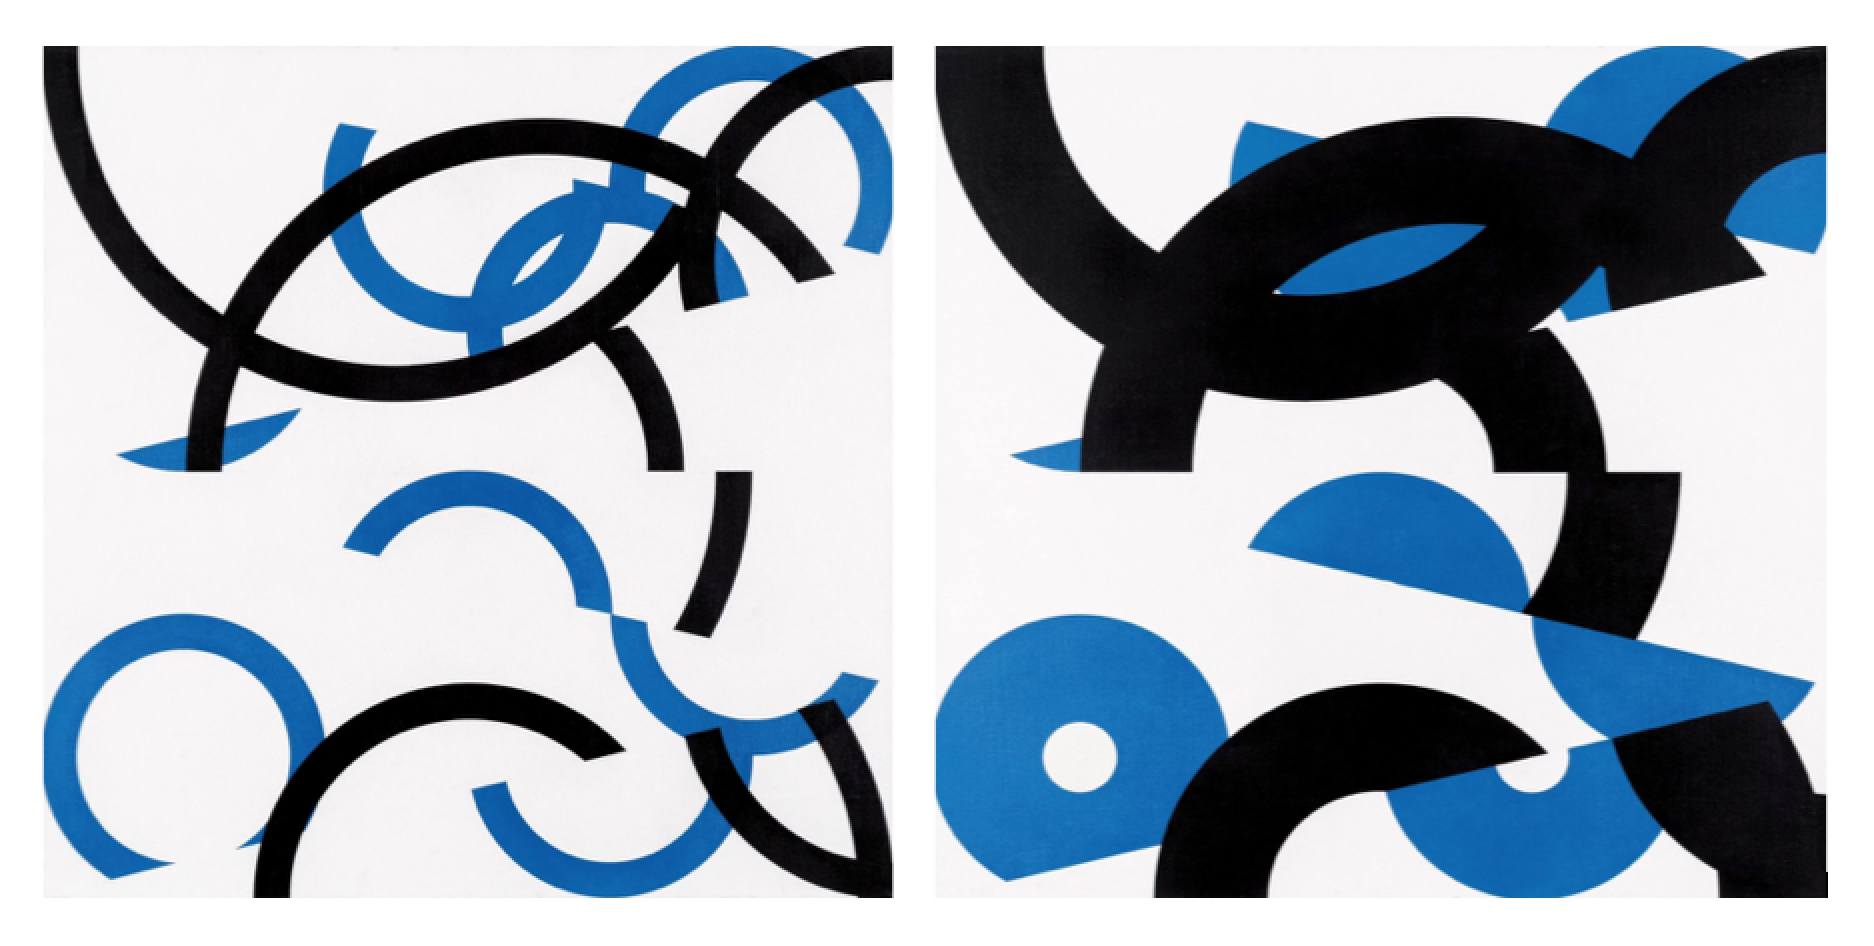 Jan Kubíček: Forma – akce, rozdělené půlkruhy, dvě dimenze, 1982-88, akryl na plátně, 80 x 80 cm cena: 1 200 000 Kč, 1. Art Consulting 20. 2. 2022